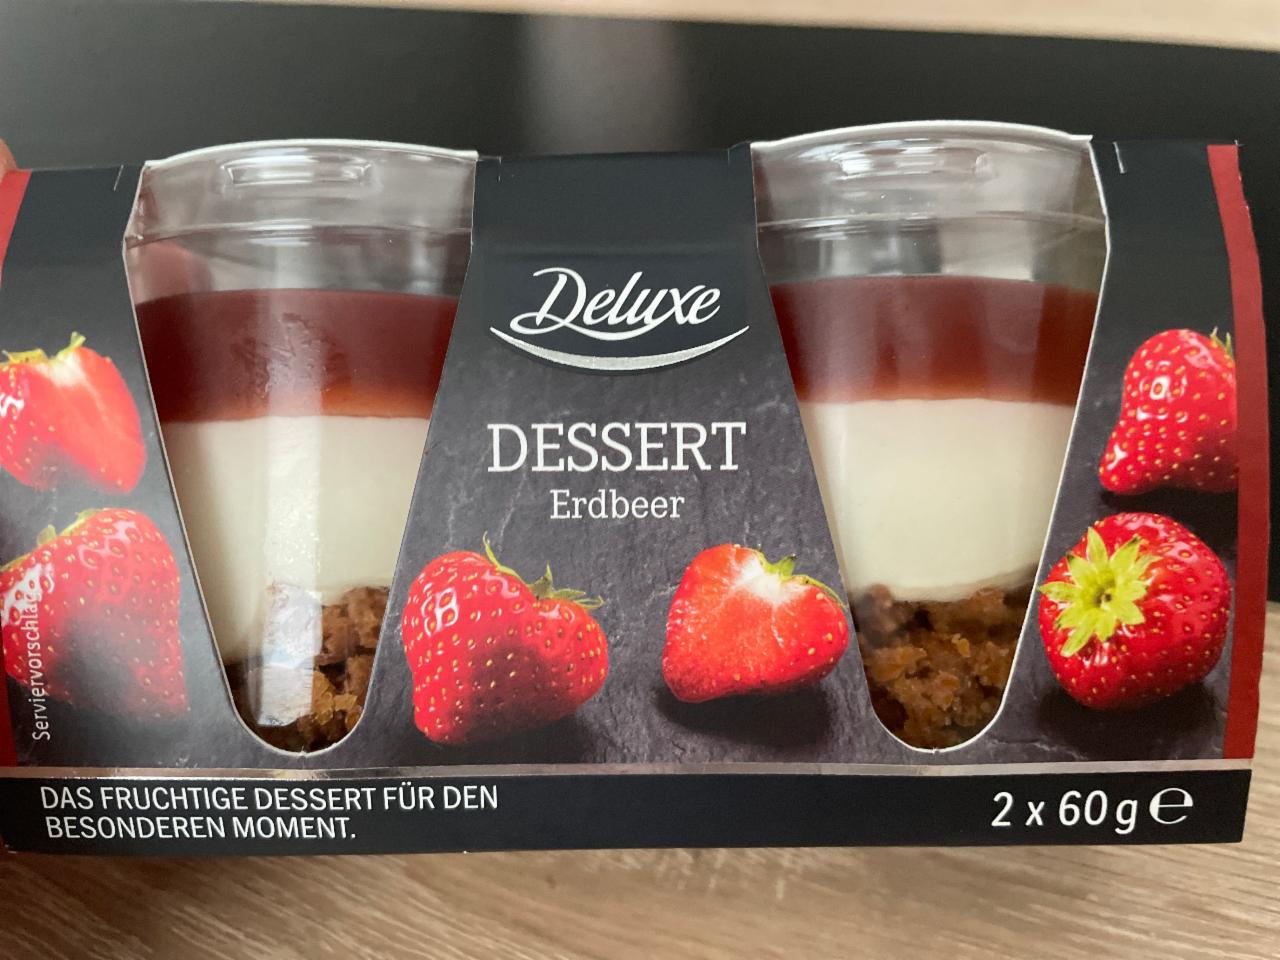 Фото - Dessert Erdbeer Deluxe